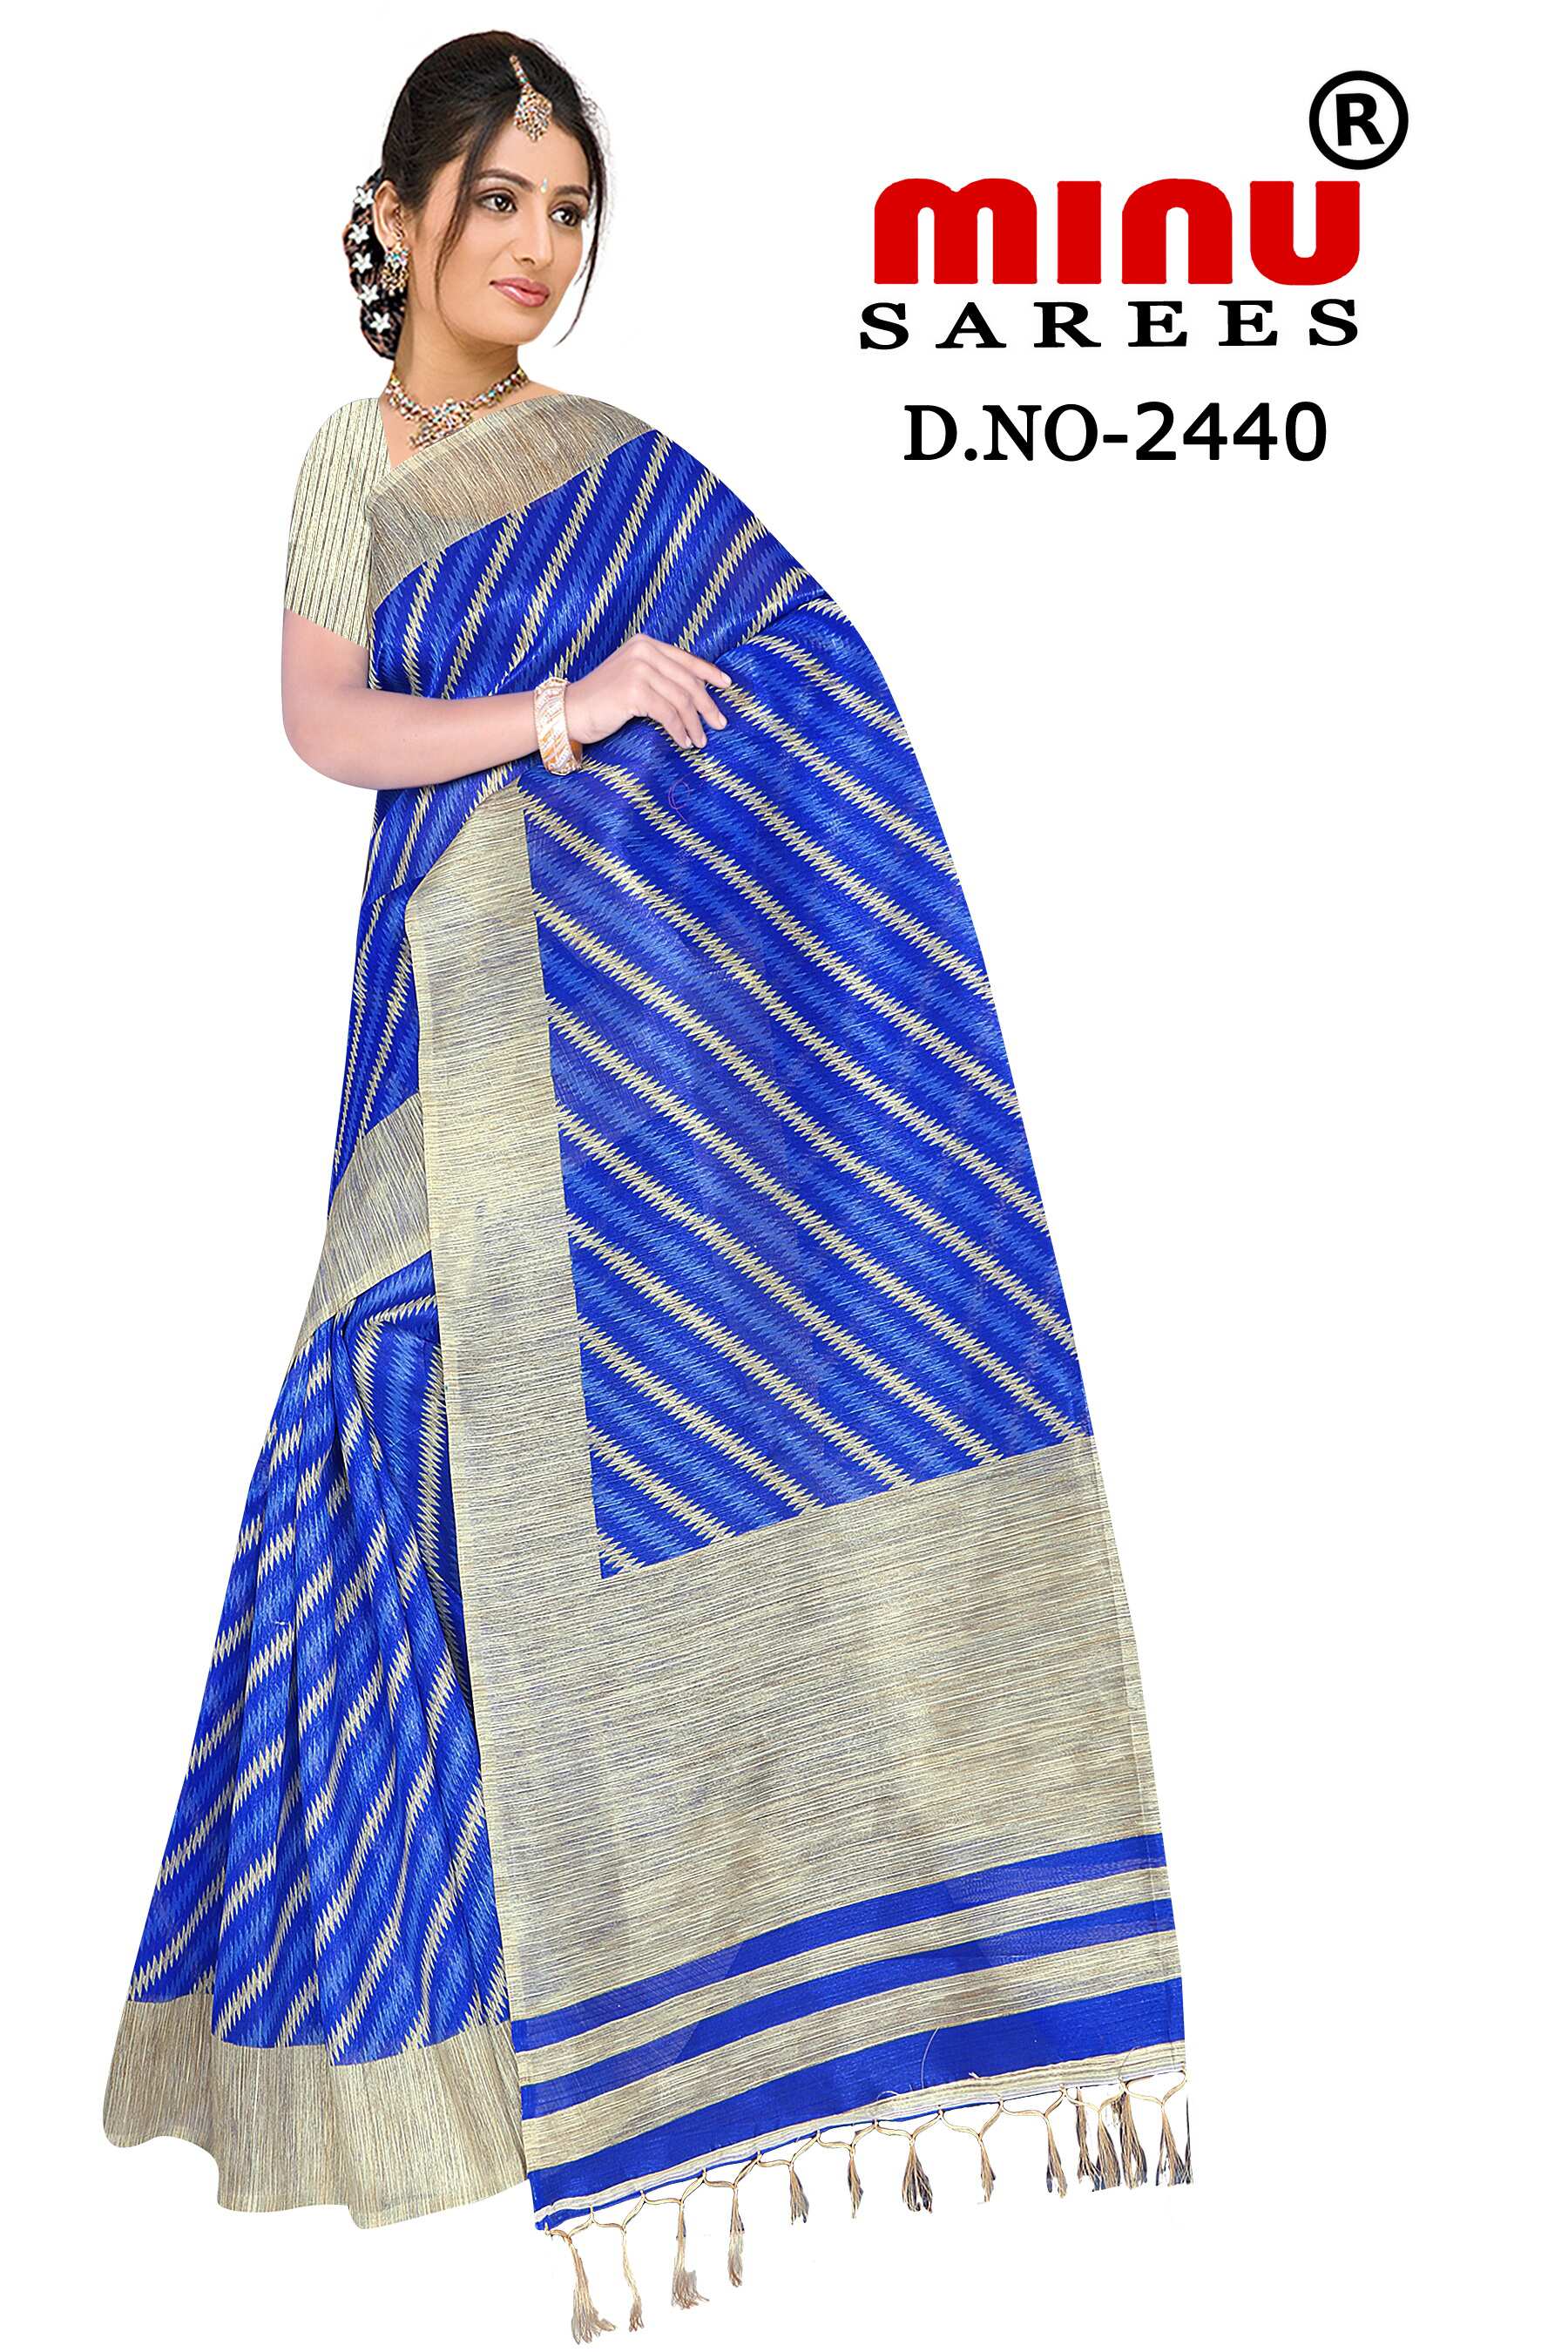 woman posing in dashing blue fancy saree at best price